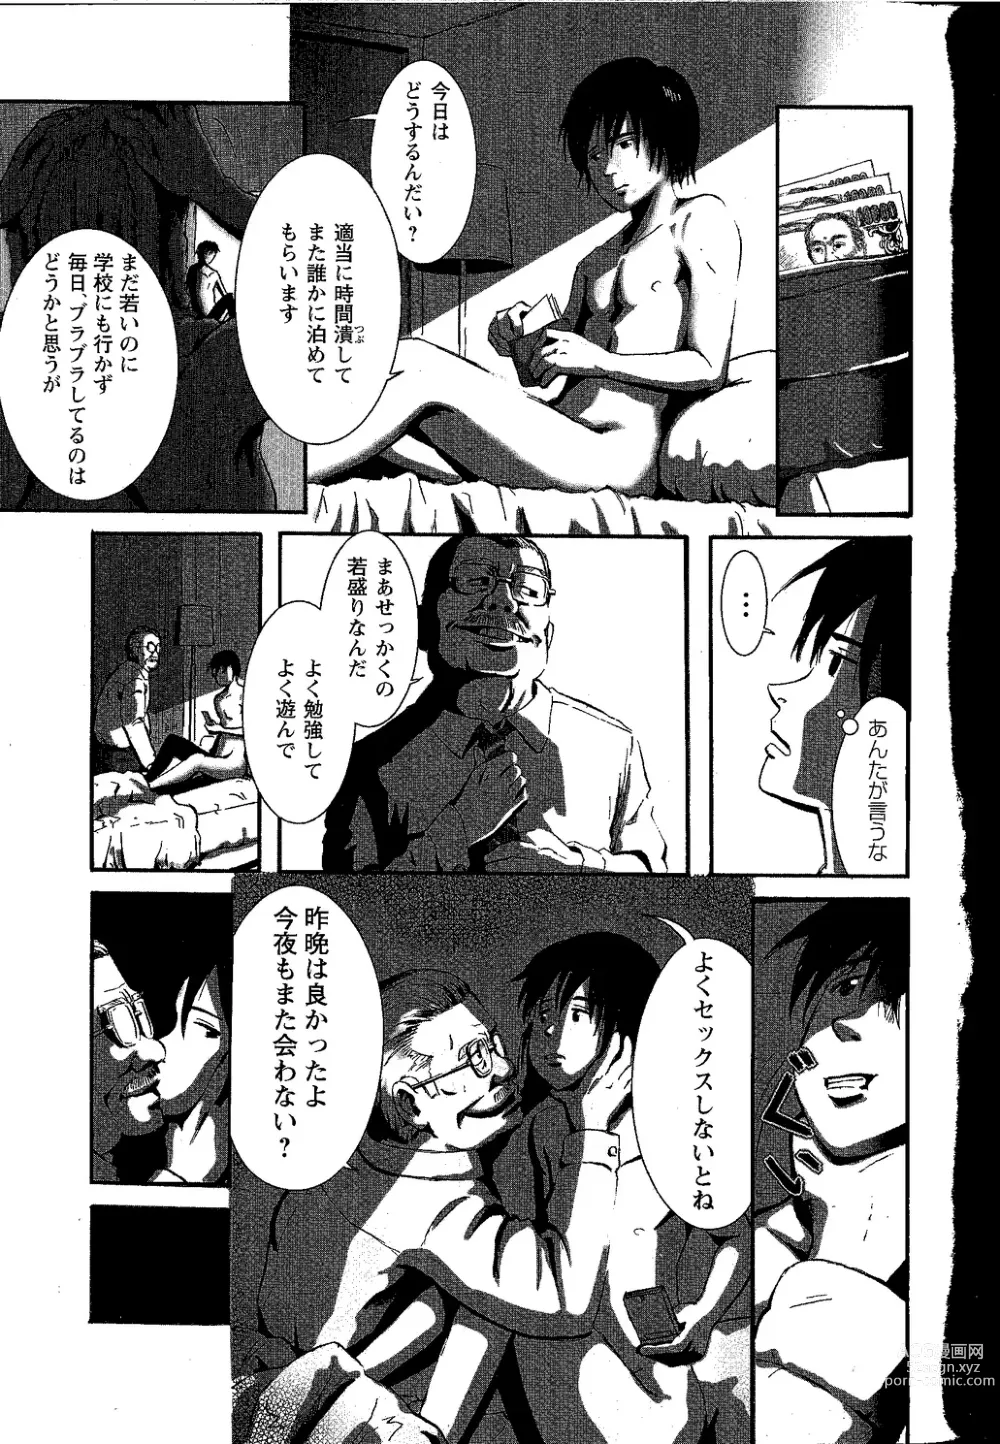 Page 3 of manga Tsubasa o Kudasai.